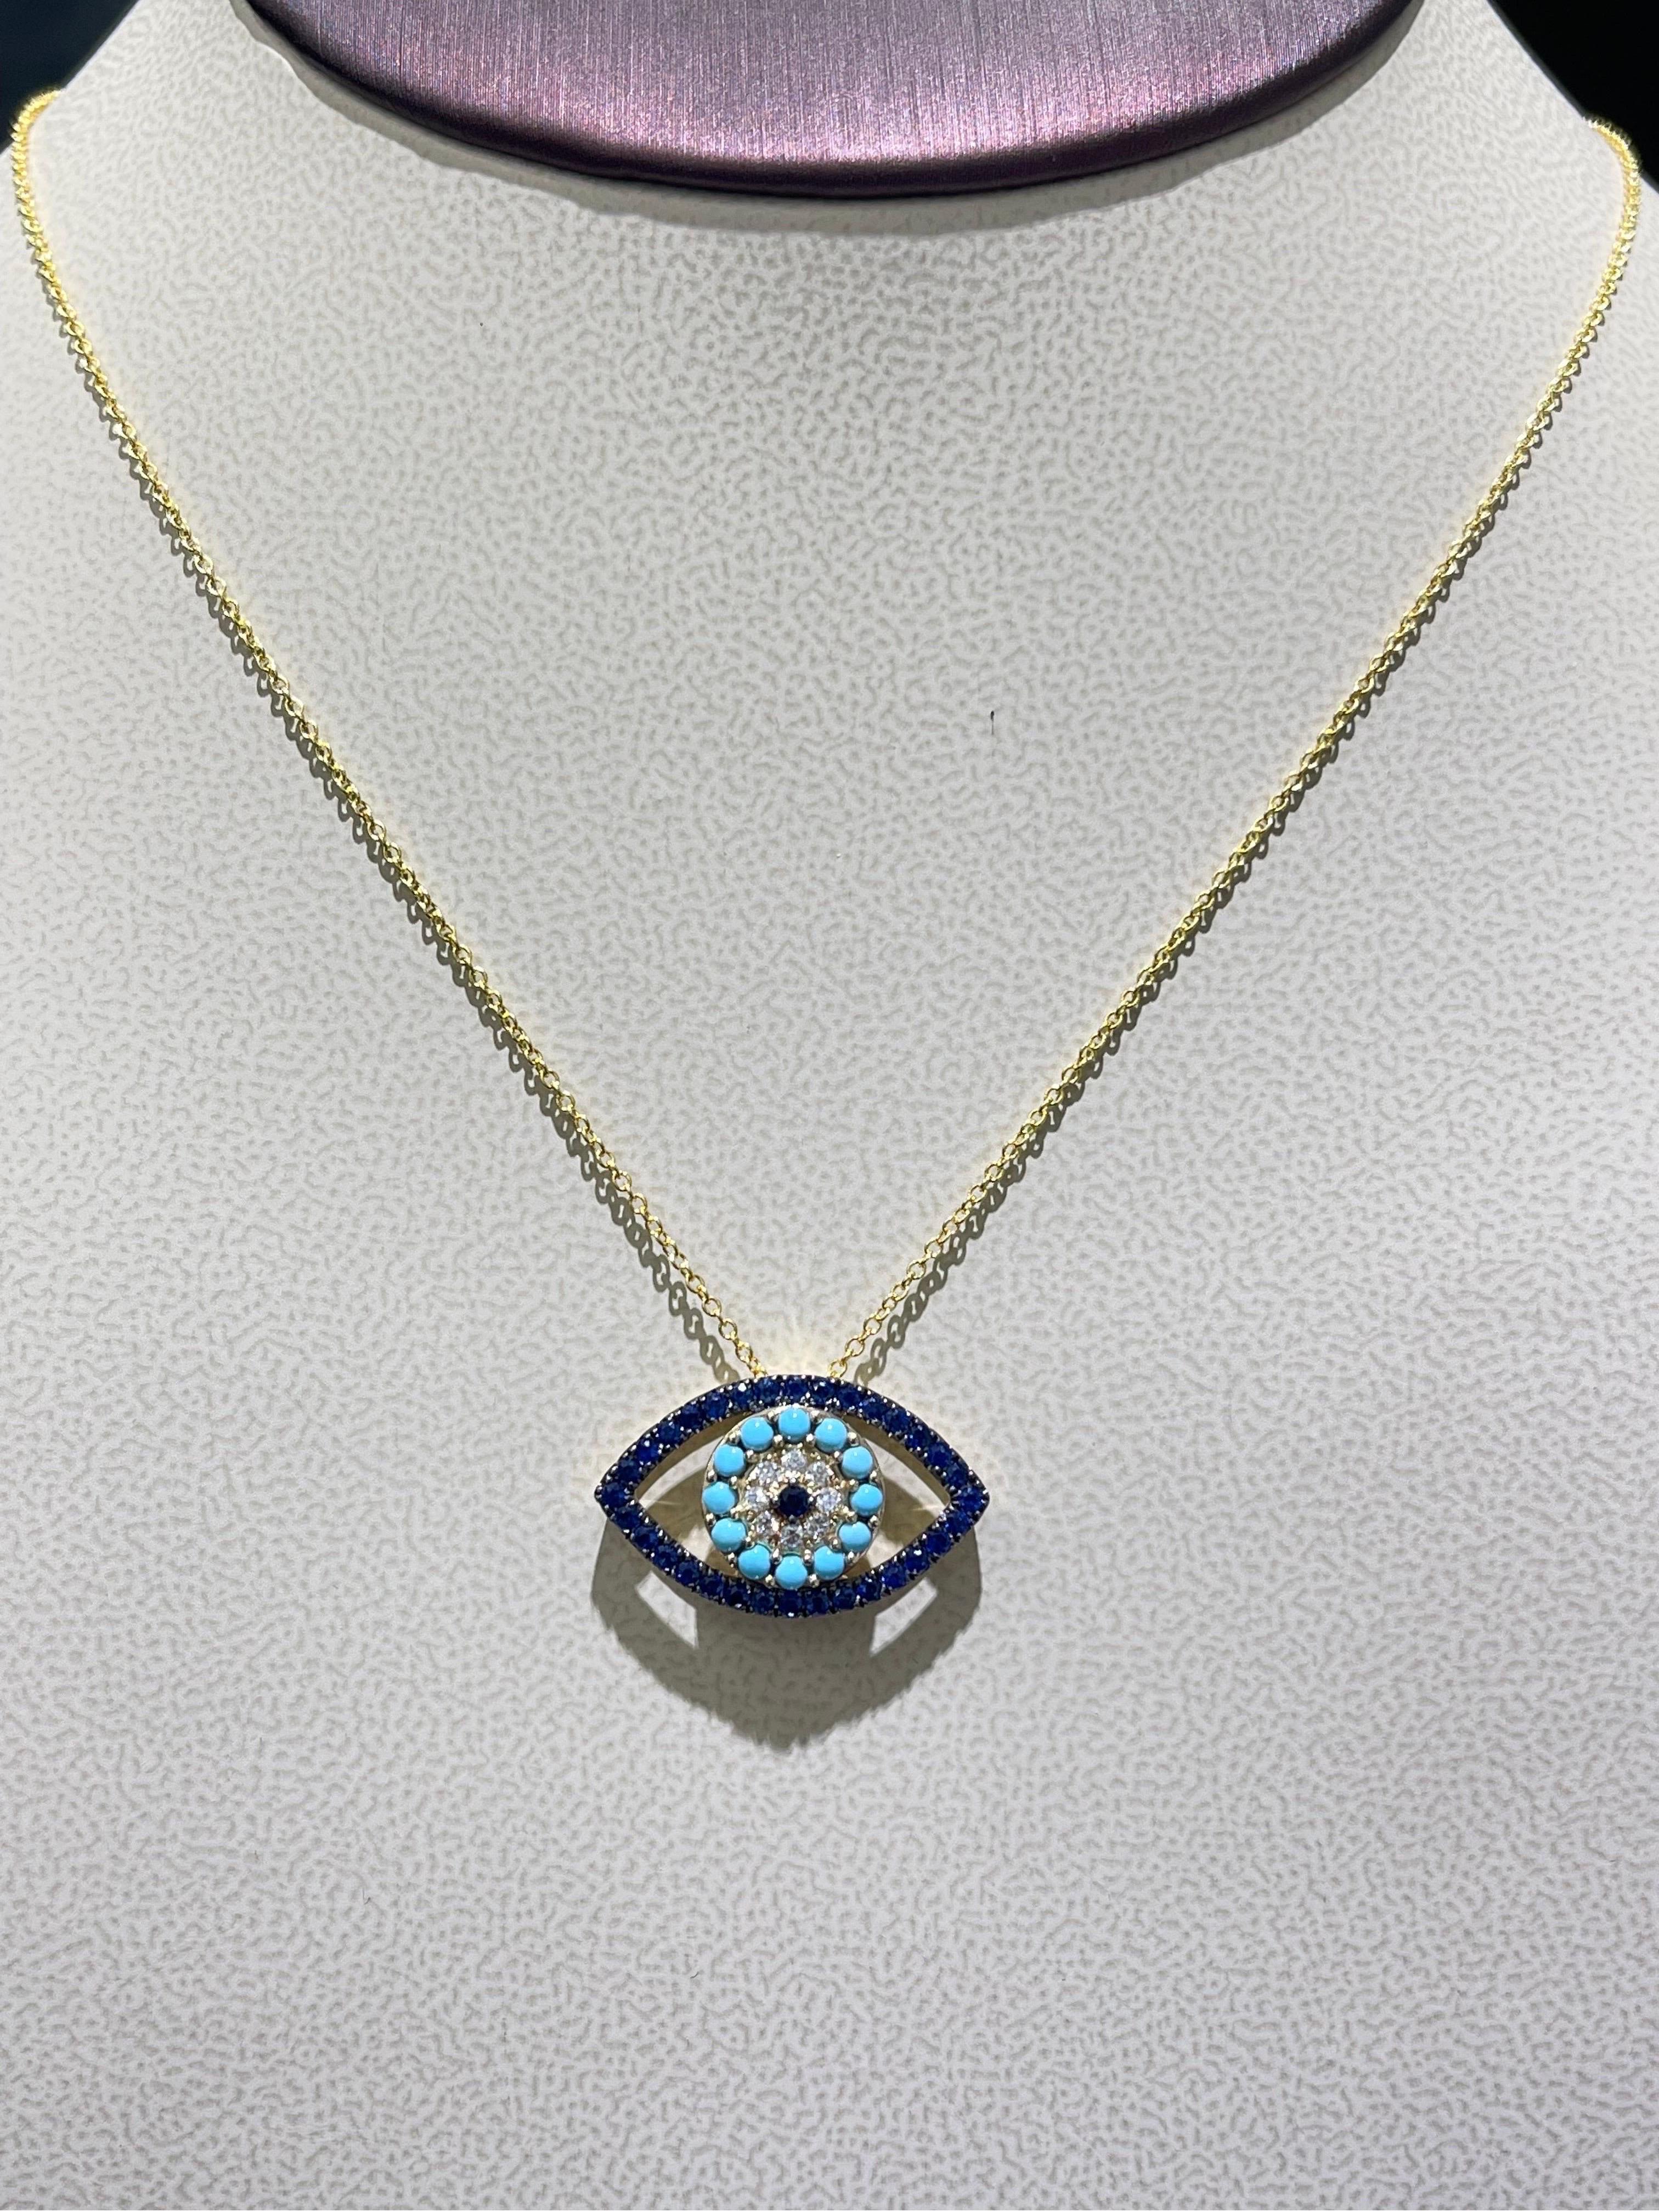 Magnifique collier œil du diable en saphir, turquoise et diamant en 14k.

- 0,11 carats de diamants,

- 1,1 carats de saphirs bleus et de turquoises,

- La longueur est réglable à 18